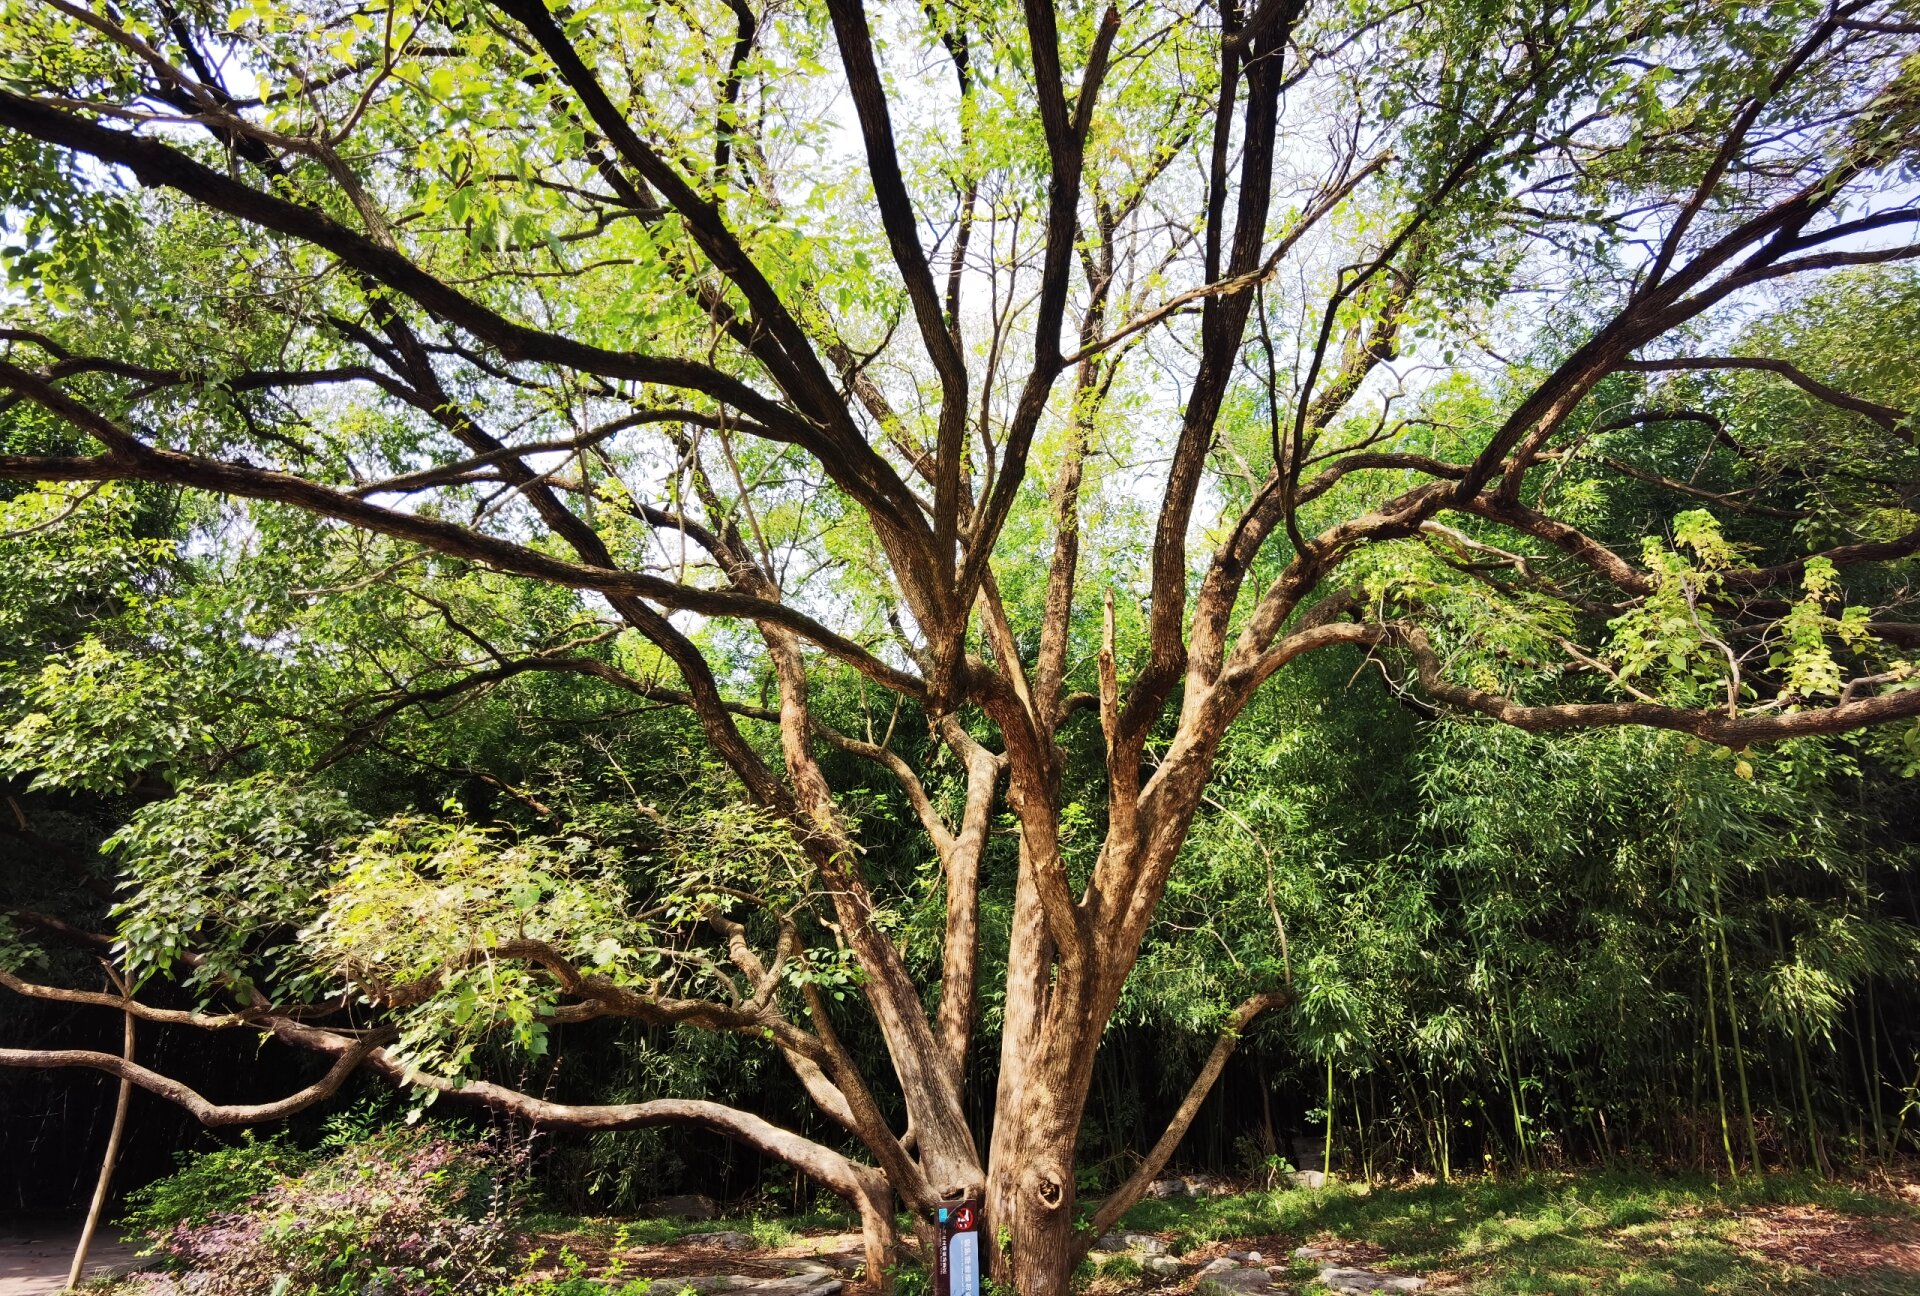 天然森林养吧—徐州泉山森林公园 泉山森林公园是徐州环城国家森林